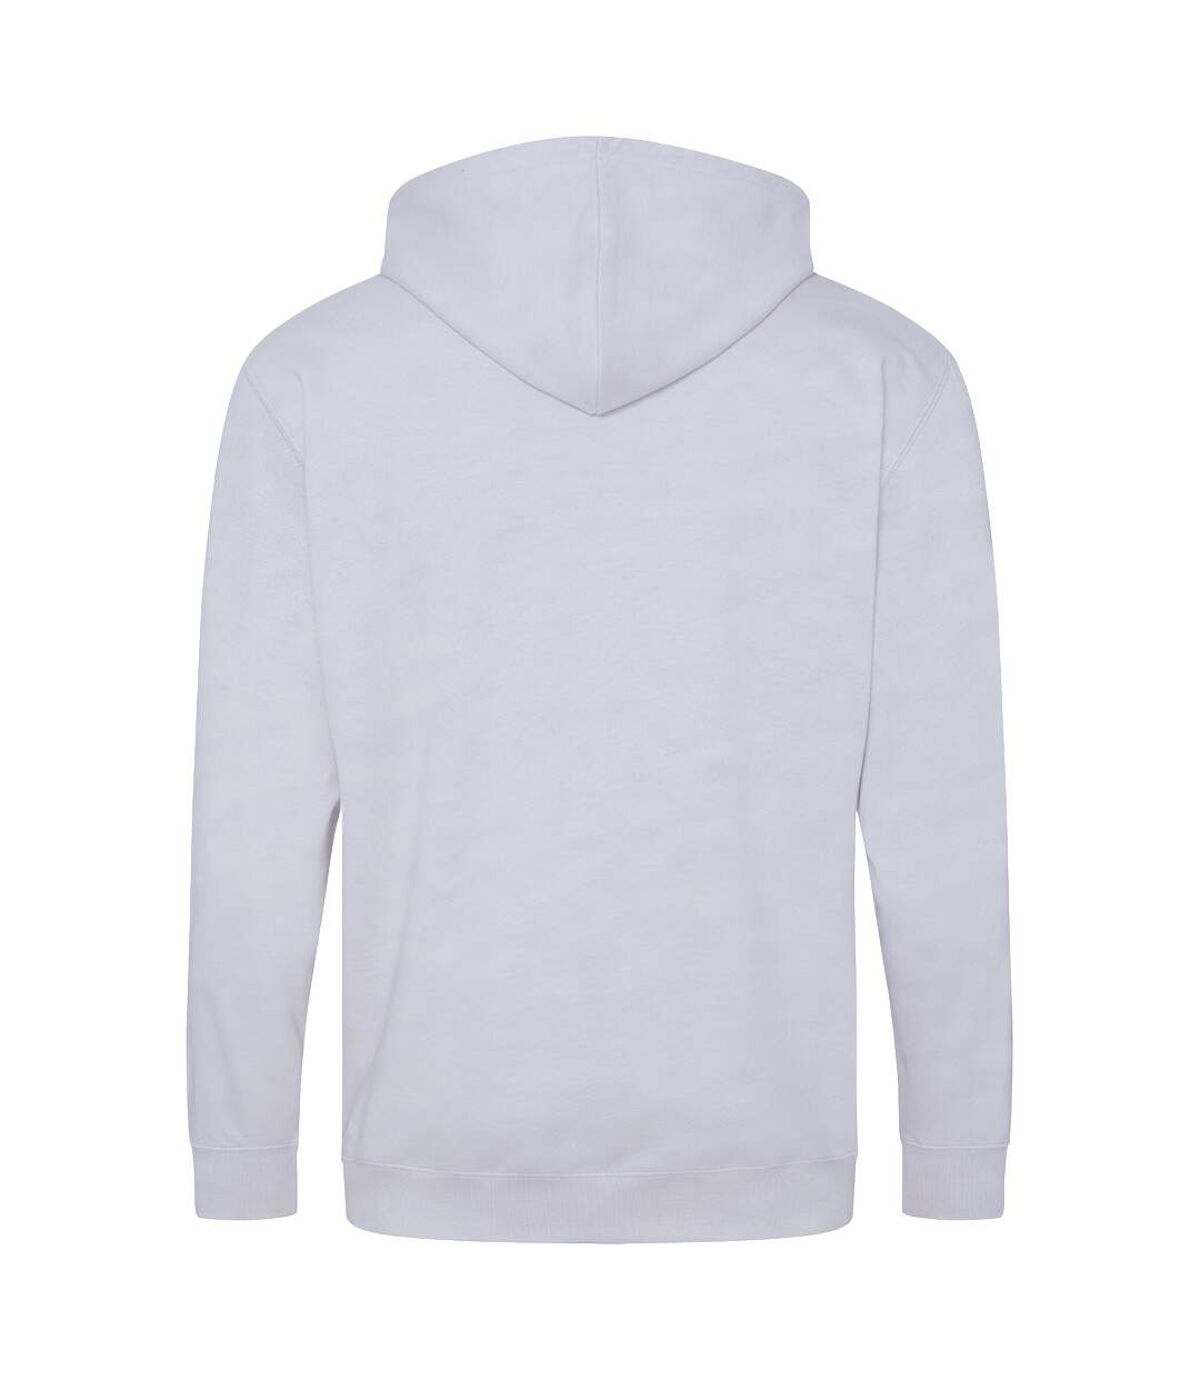 Awdis - Sweatshirt à capuche et fermeture zippée - Homme (Cendre) - UTRW180